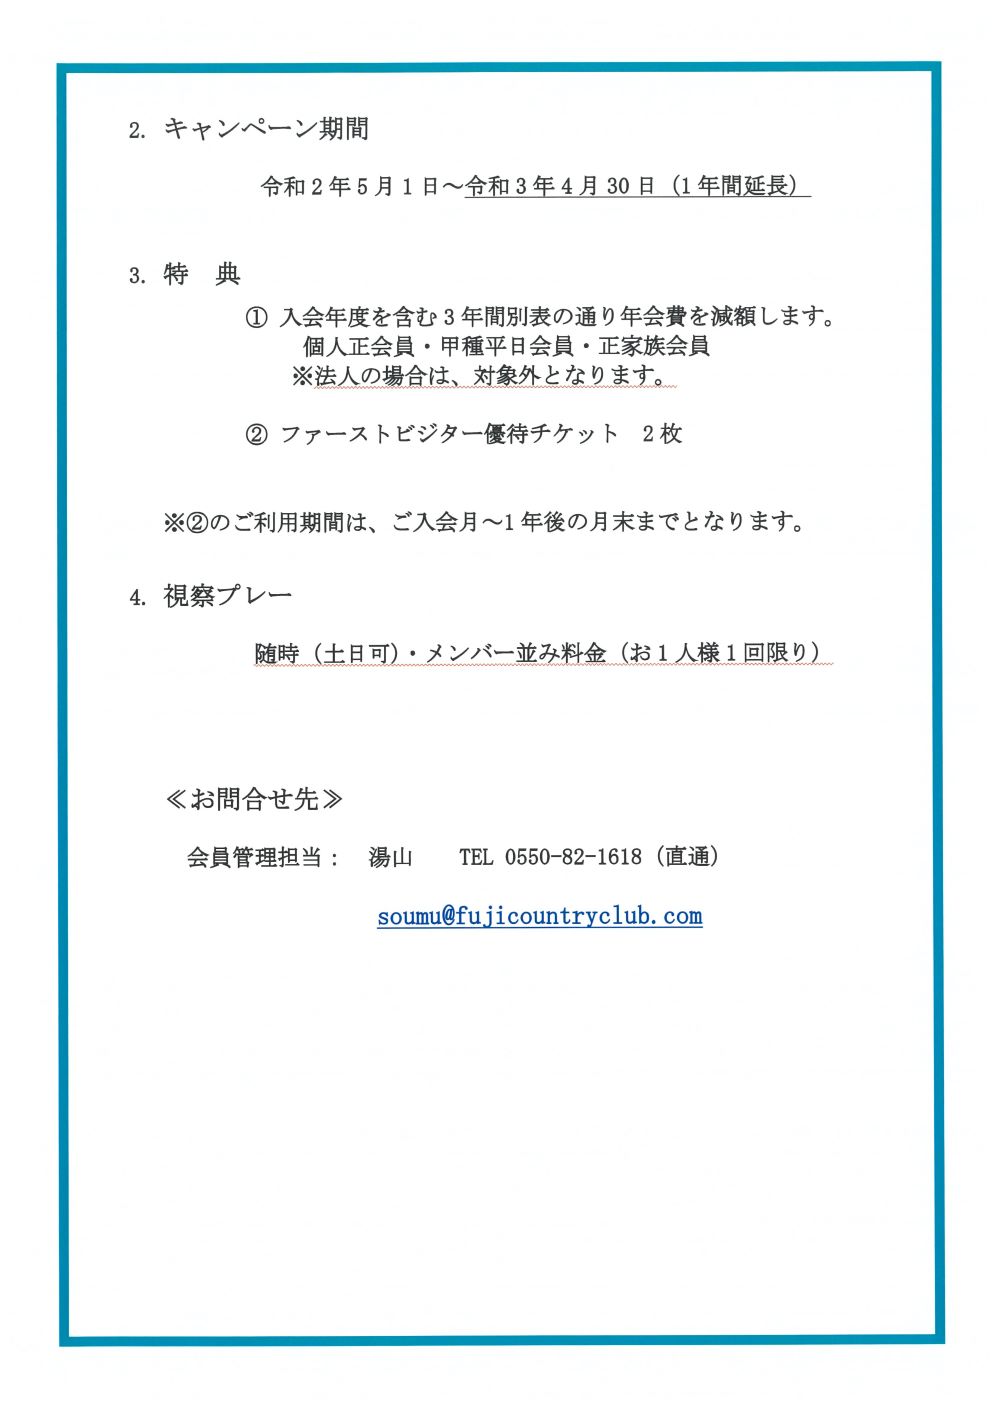 変更 オリンピック チケット 名義 東京オリンピック2020 チケット『来場予定者名（名義）』変更法